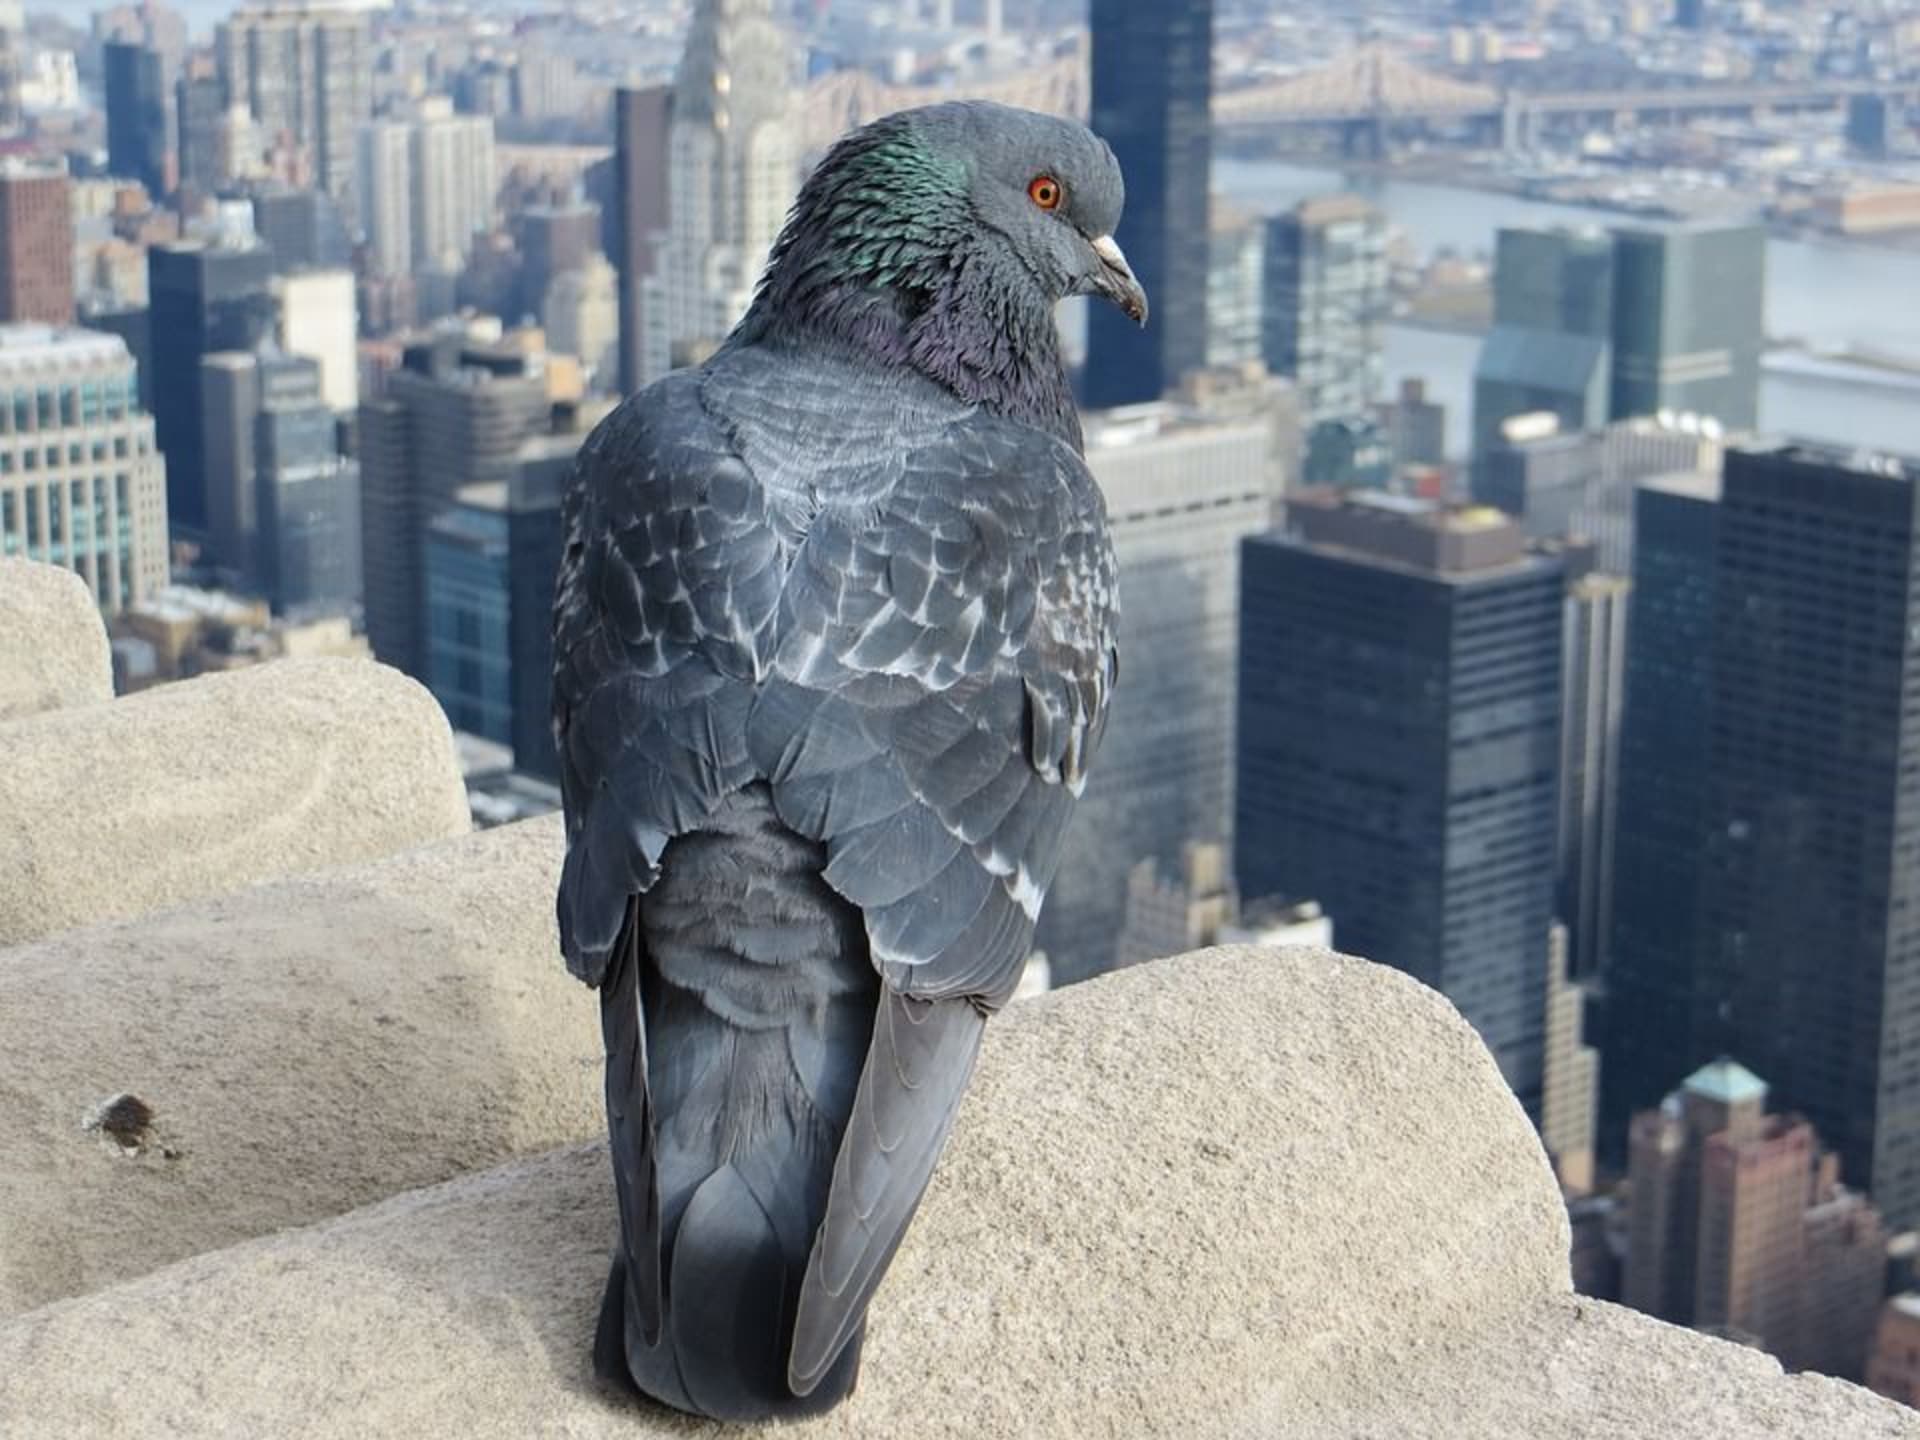 S holuby se potkáváme nejčastěji ve městech, kde je považujeme za škůdce. Mohou za to ale jen naše špatné návyky - ve městech holubi přežívají jen díky nám.